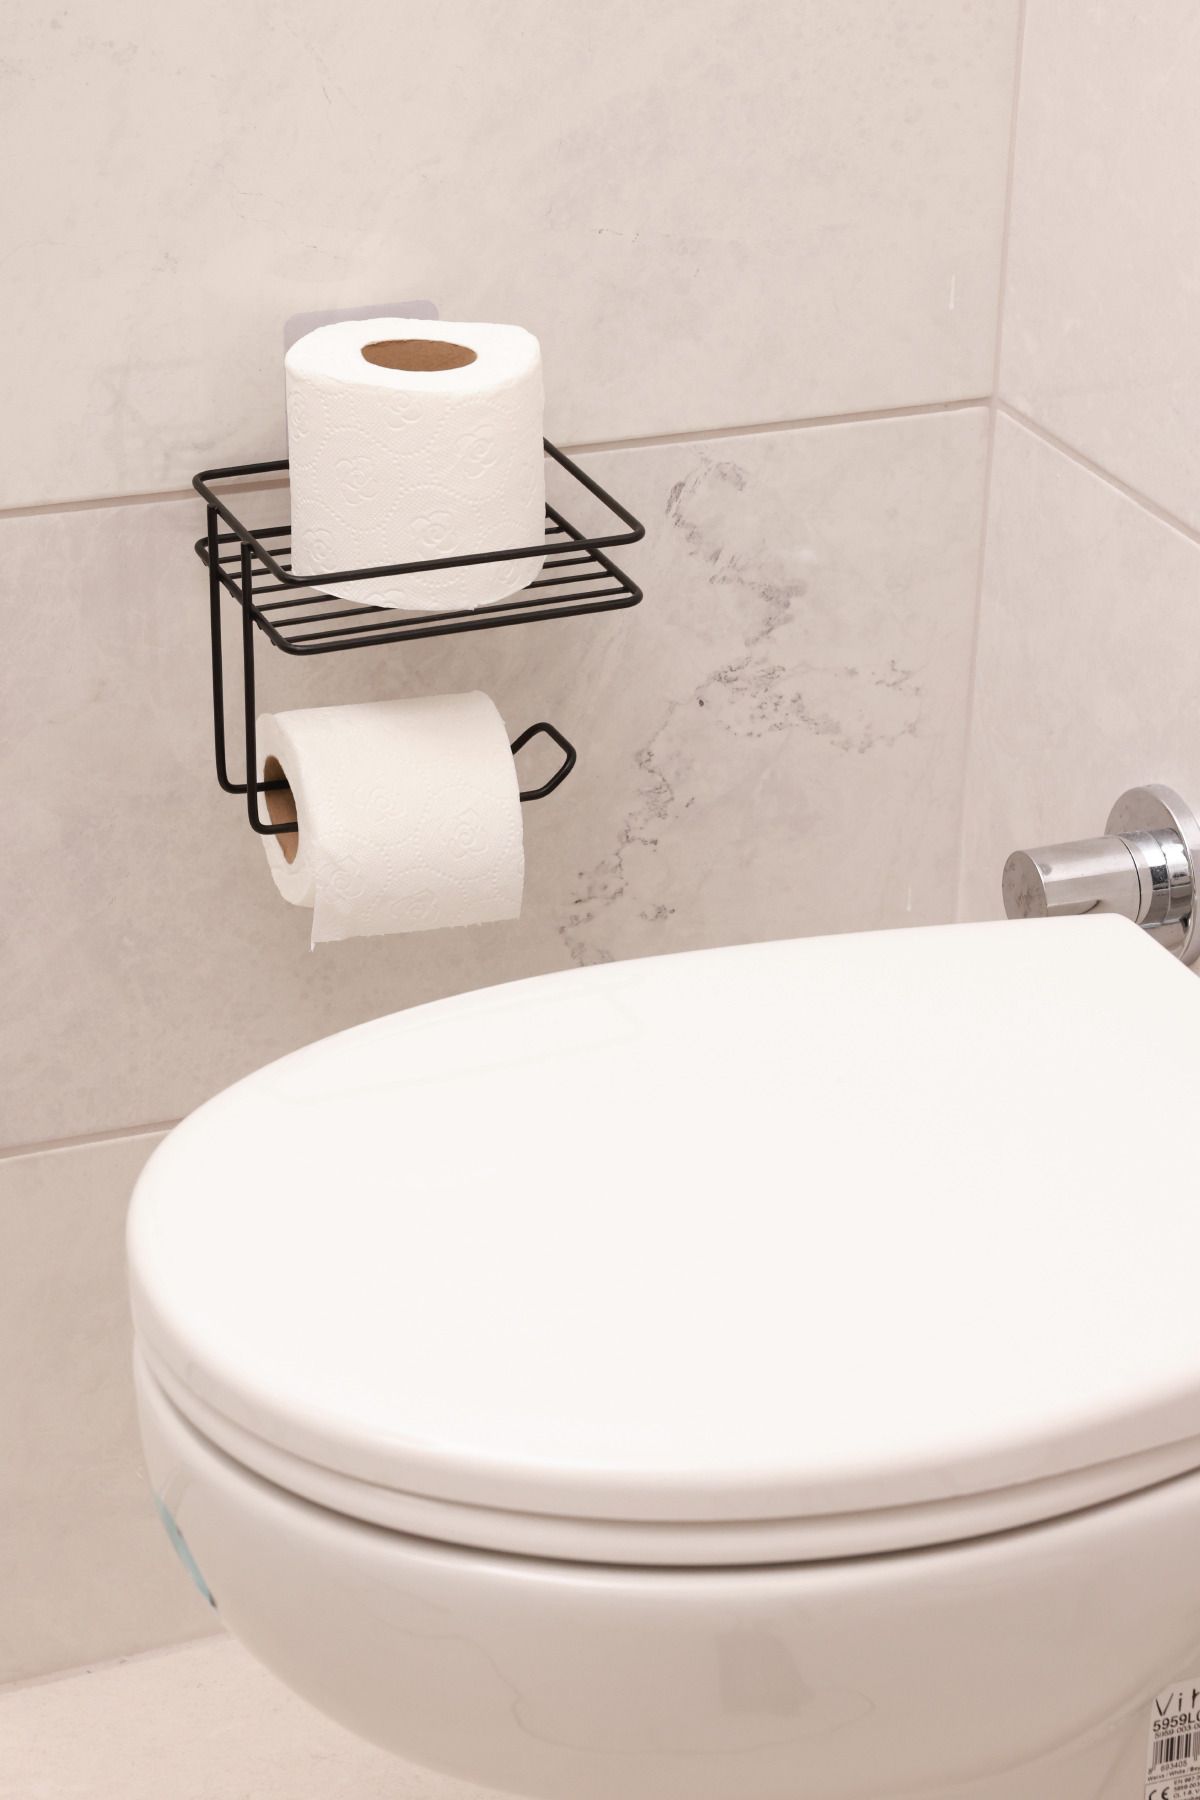 BUSEMSİ HOME Yapışkanlı Tuvalet Kağıtlığı Tutacağı Askısı Siyah Metal Tuvalet Kağıtlık Raflı Tuvalet Kağıtlığı